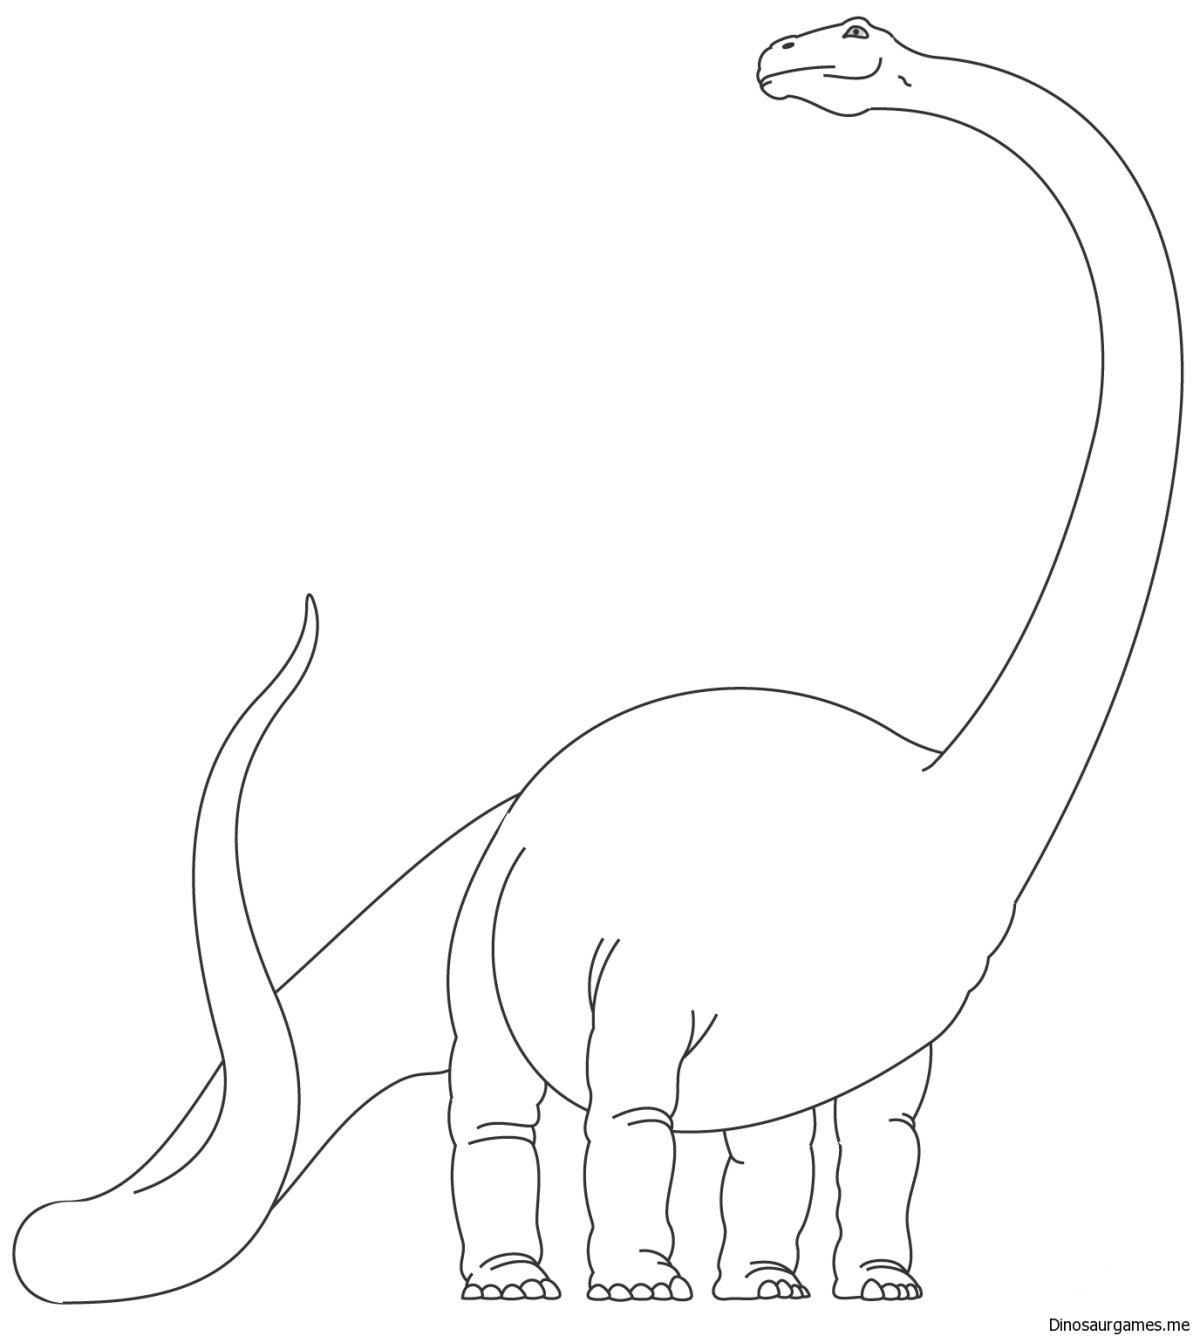 Брахиозавр рисунок поэтапно